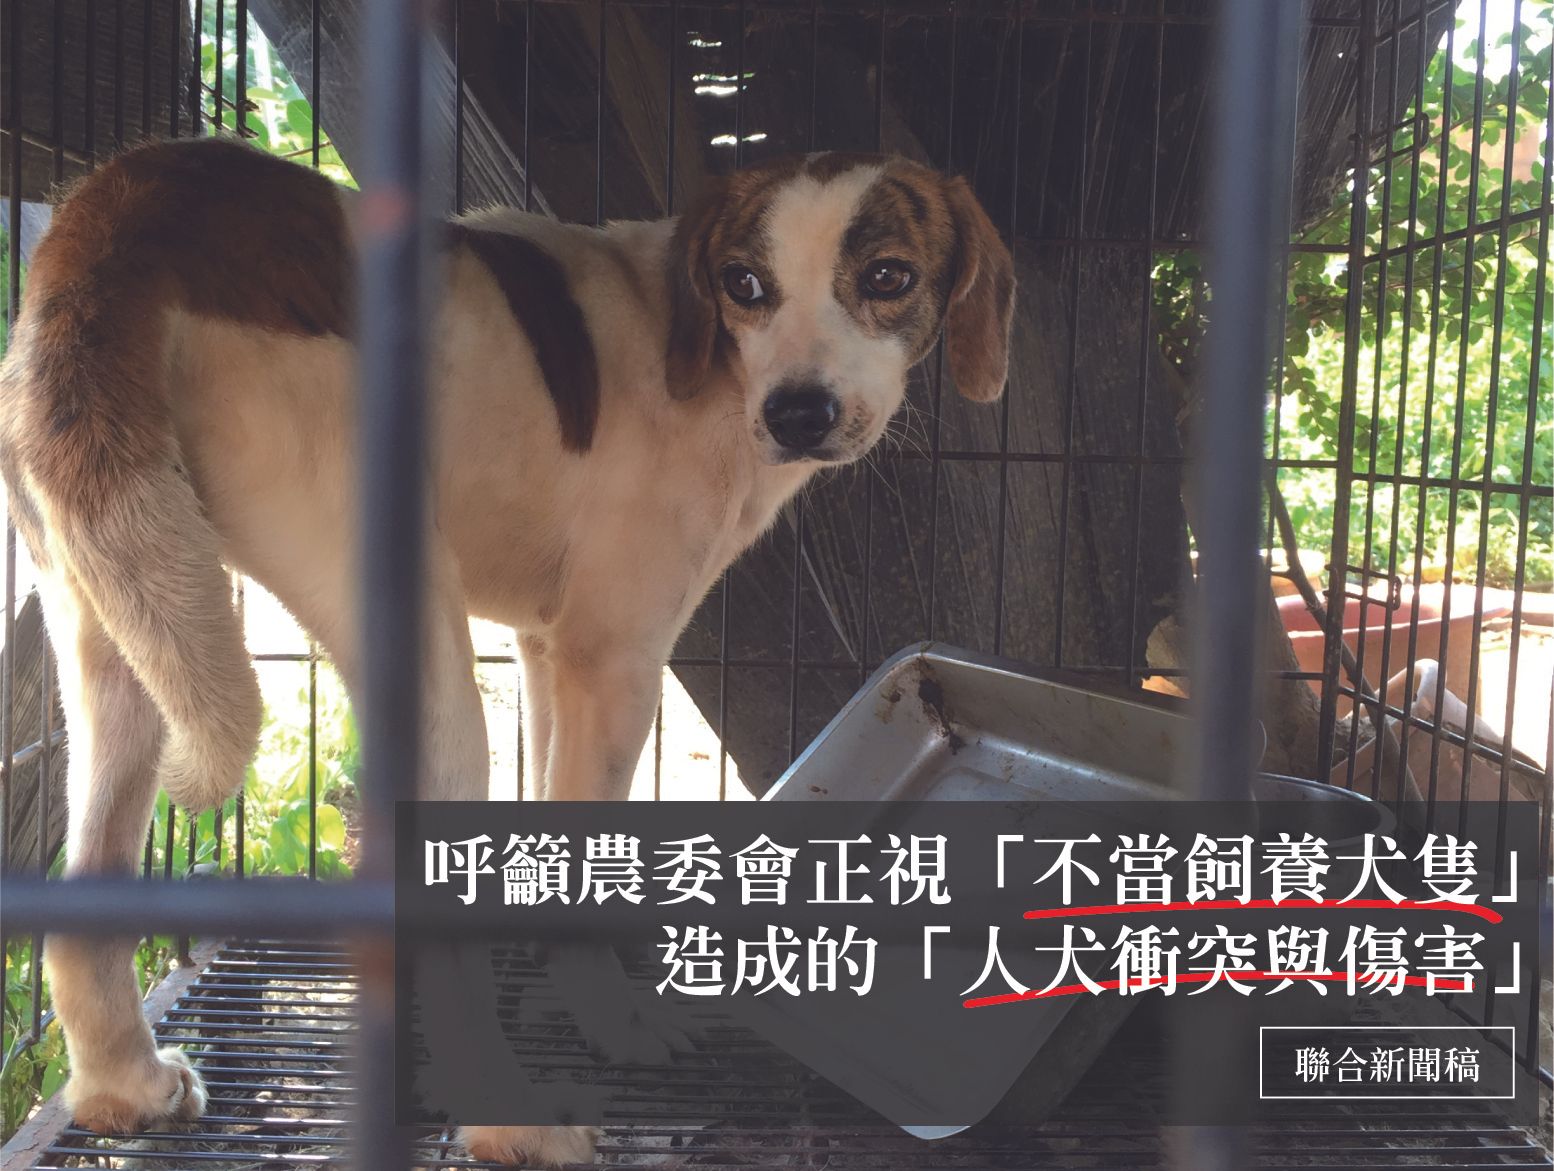 [新聞稿]呼籲農委會正視「不當飼養犬隻」造成的「人犬衝突與傷害」